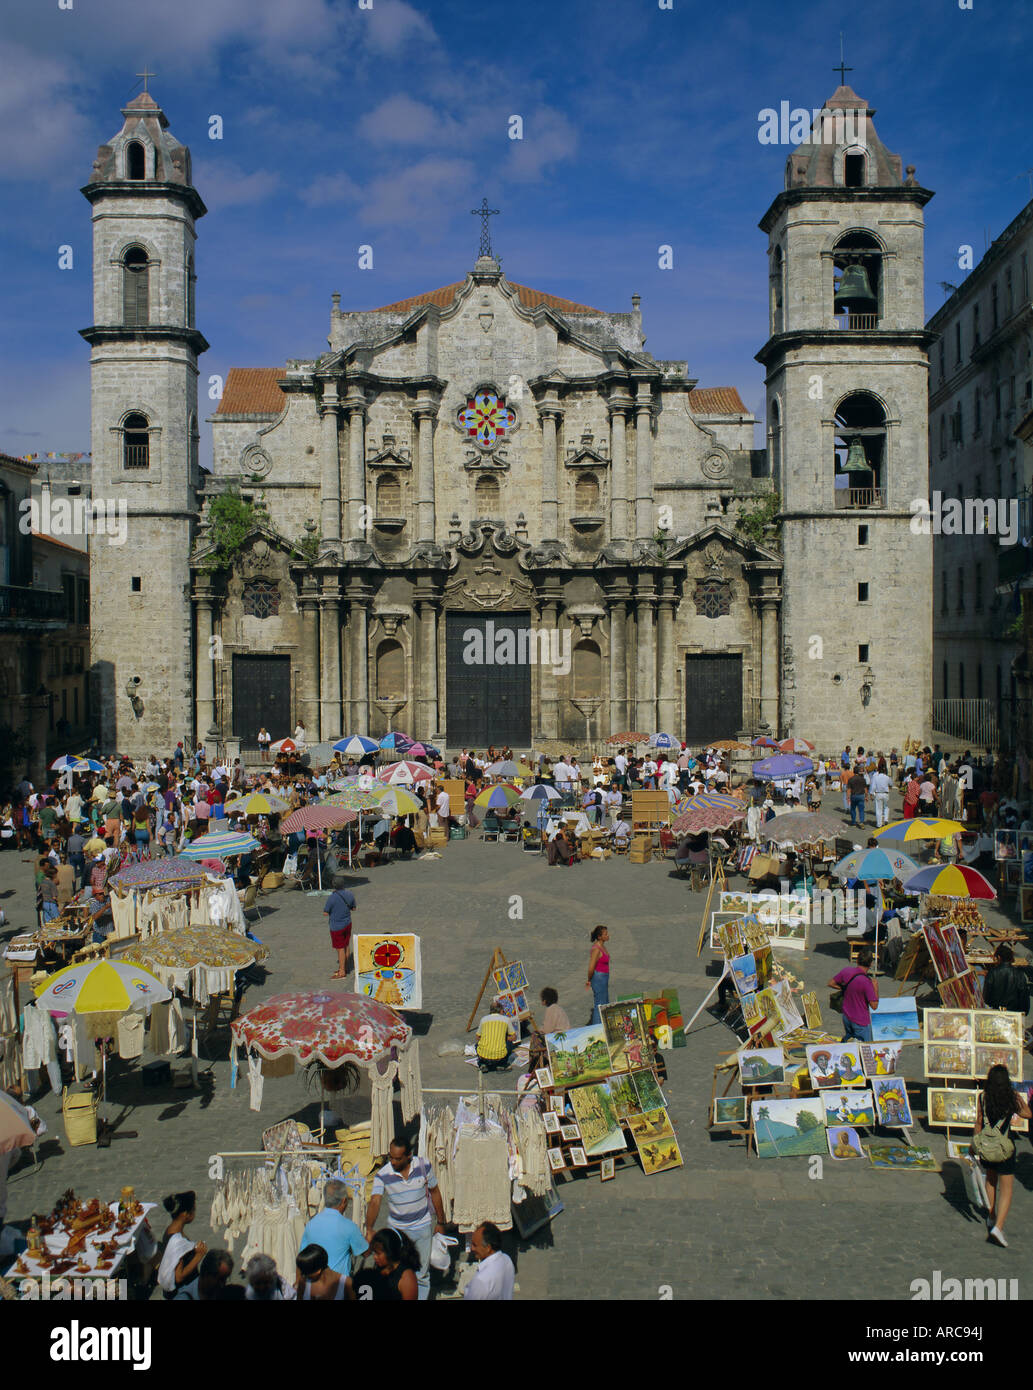 Cathedral, Plaza et marché, La Havane, Cuba, Antilles, Amérique Centrale Banque D'Images